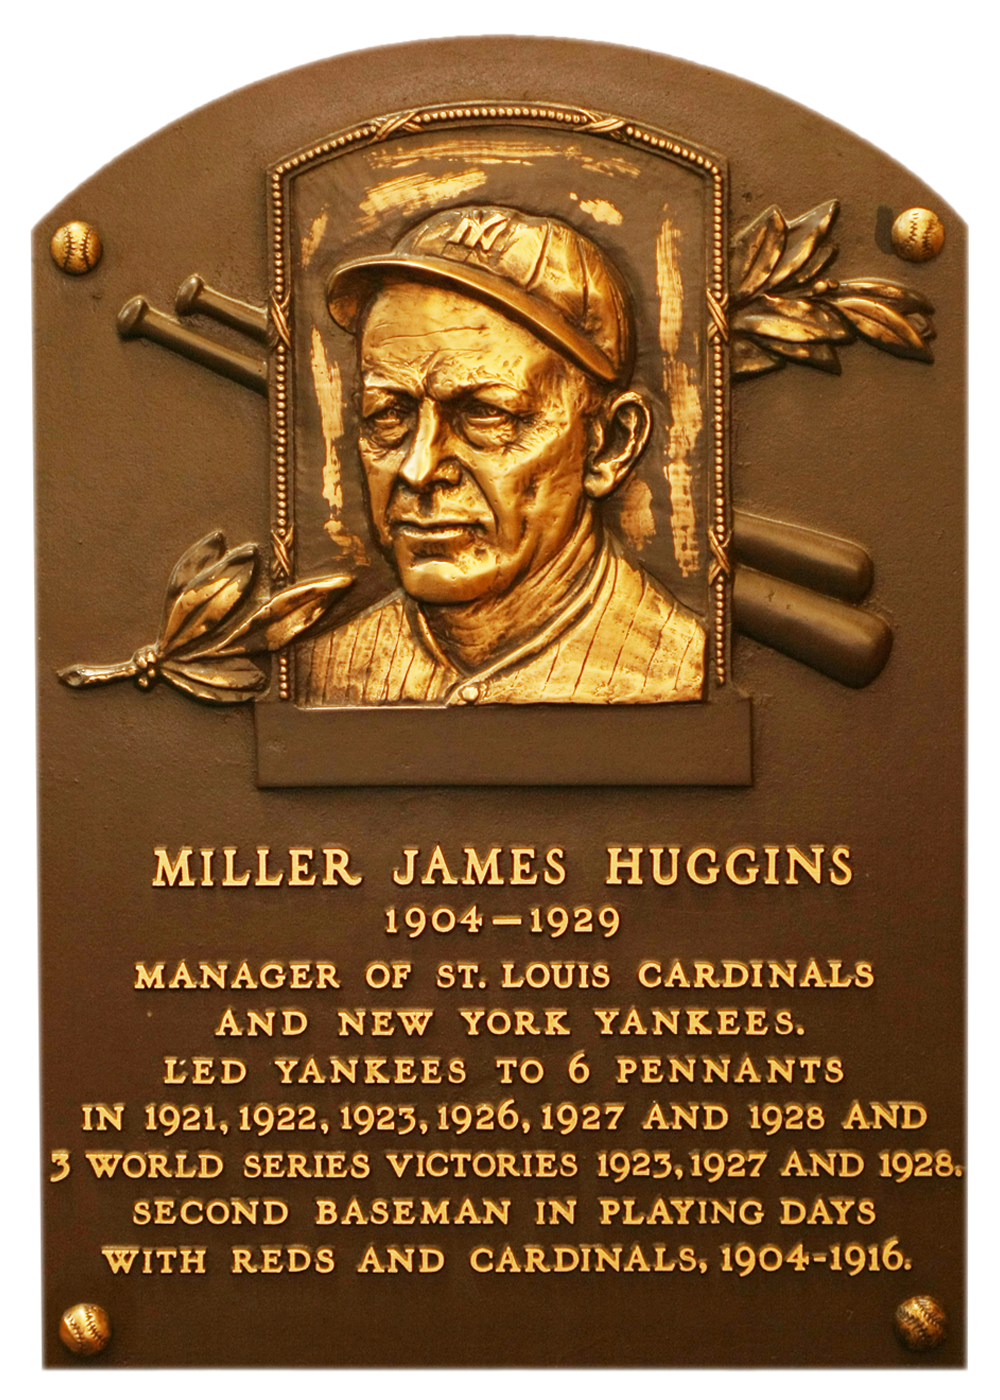 Miller Huggins Hall of Fame plaque